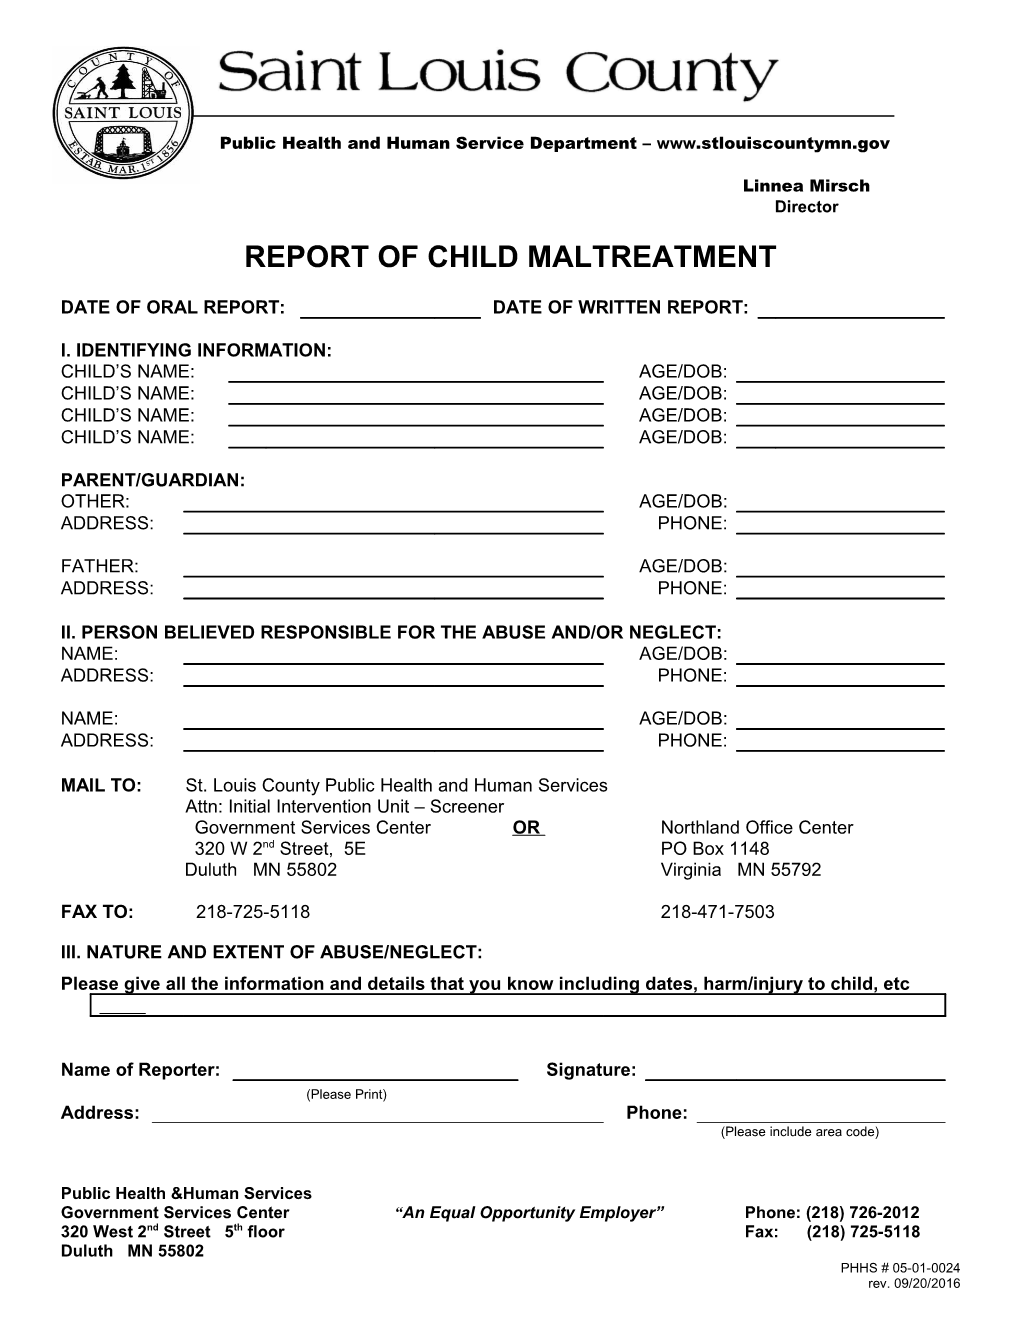 Report of Child Maltreatment